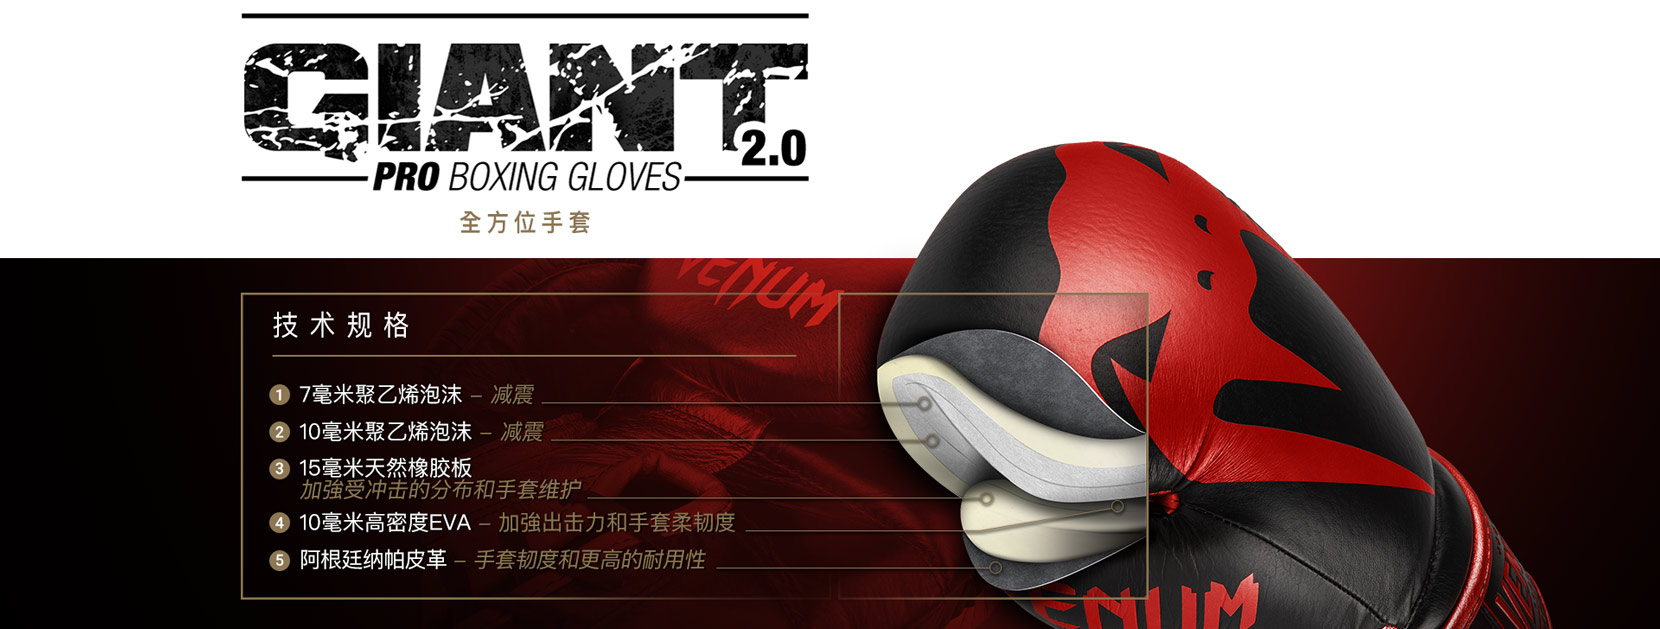 Giant 2.0 Pro Boxing